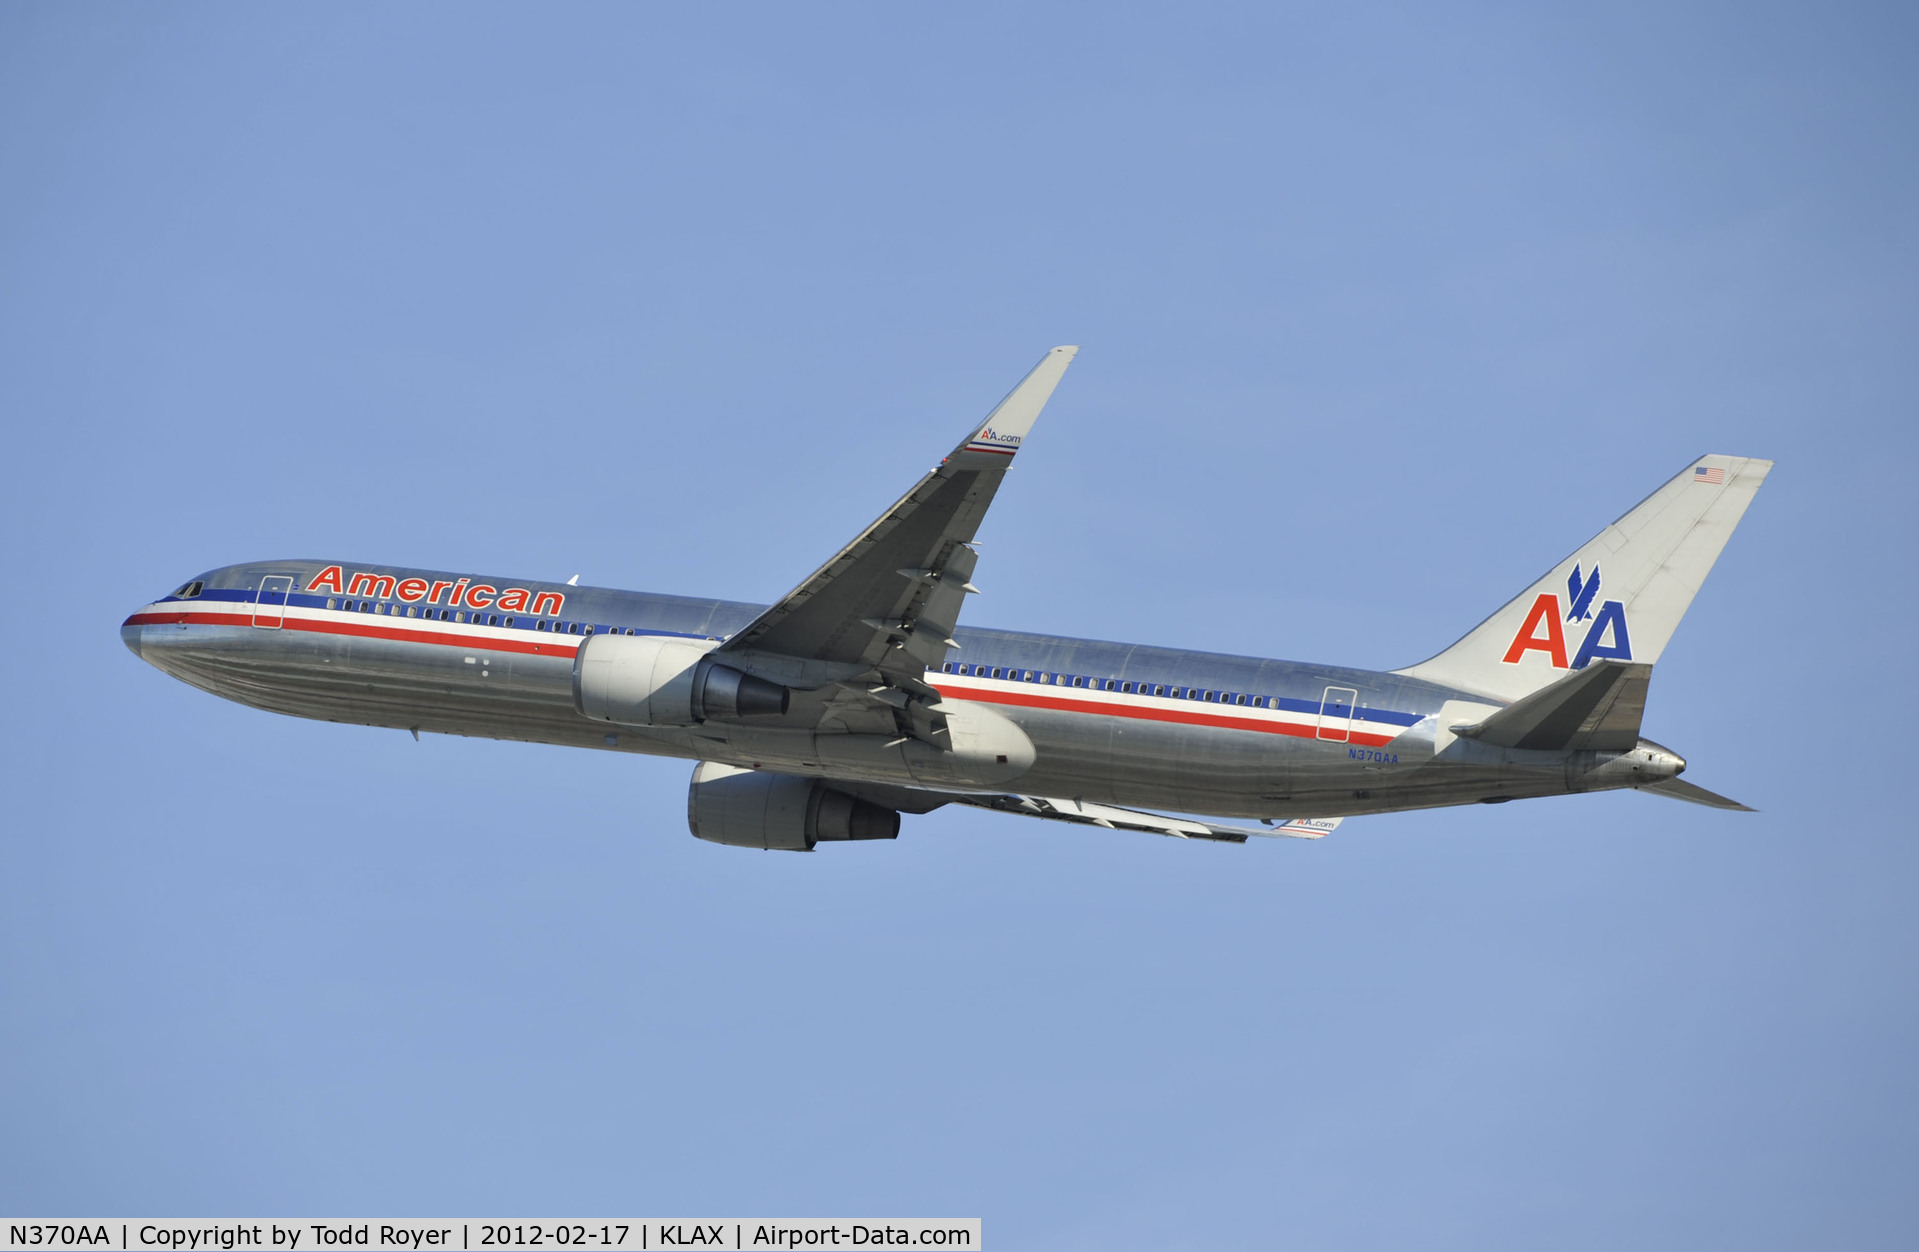 N370AA, 1992 Boeing 767-323 C/N 25197, Departing LAX on 25R